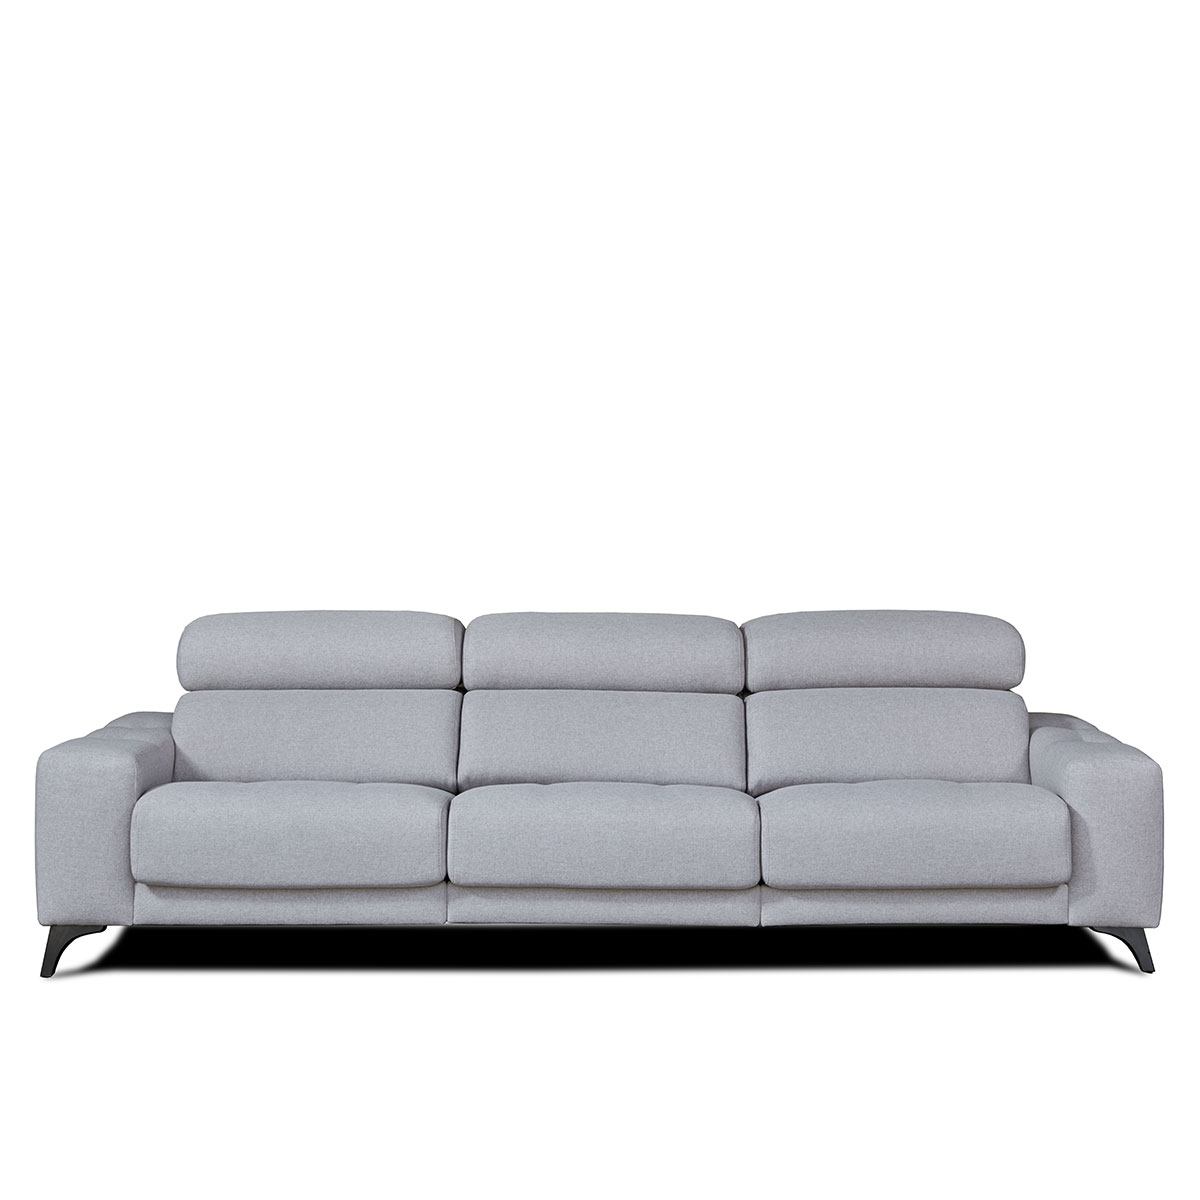 Sofá deslizante reclinable Gus- Comprar sofas. Artikalia